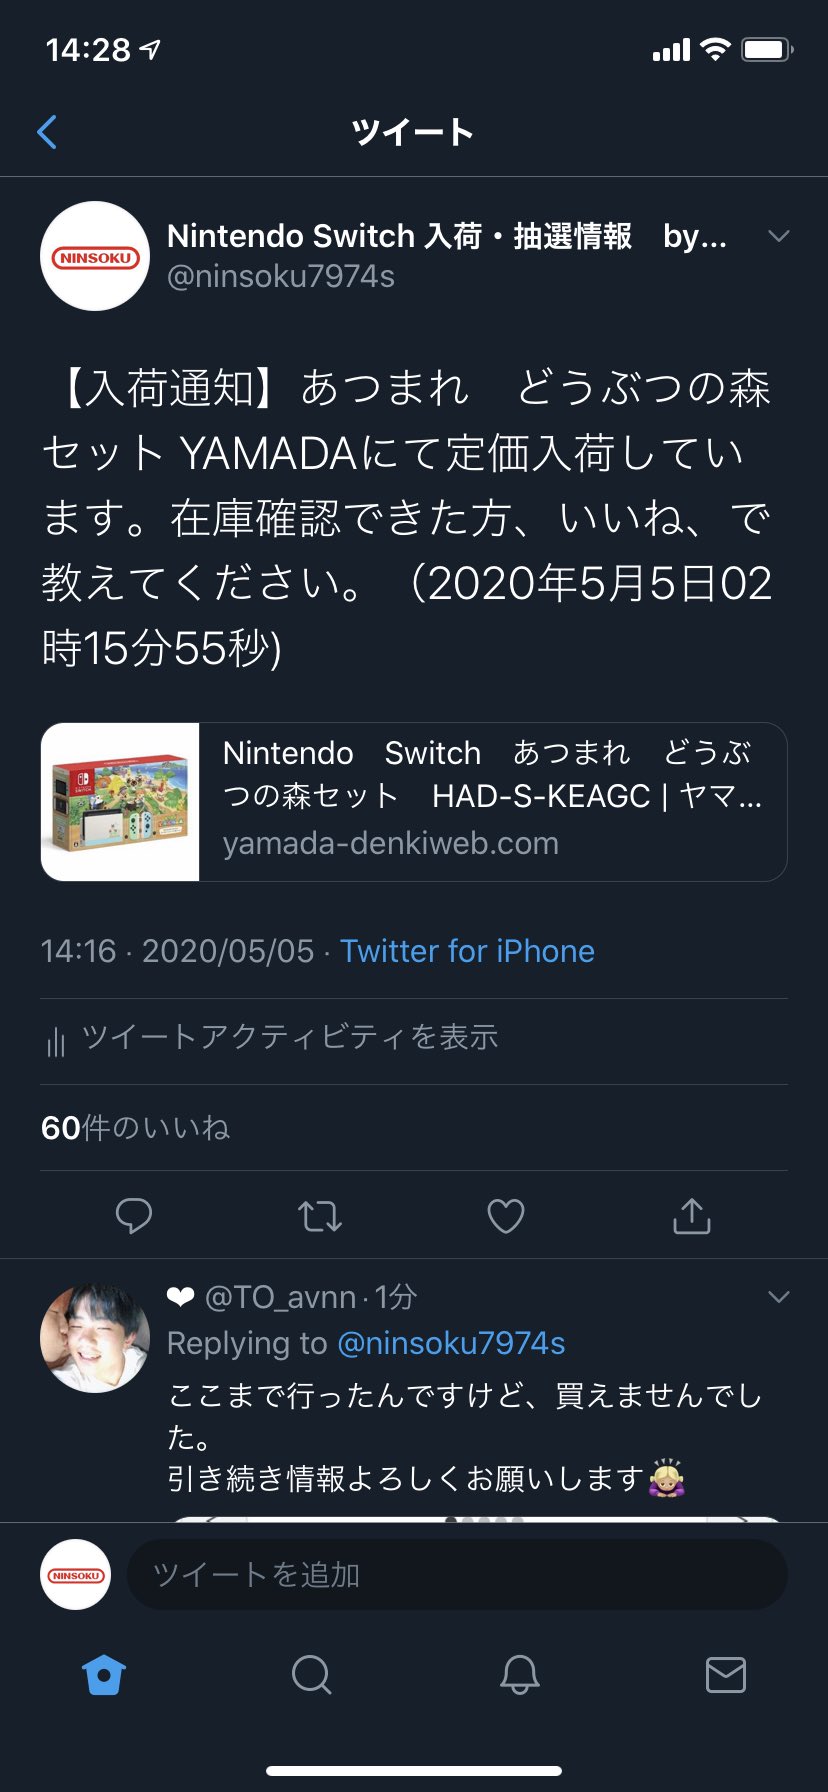 Nintendo Switch 入荷通知 By 任速 赤 Takagiyu タカギさんはじめまして シナウスさんより2分早く入荷速報いたしました よろしければ当方も情報源として参照くださいませ T Co St8nmy4gnw Twitter